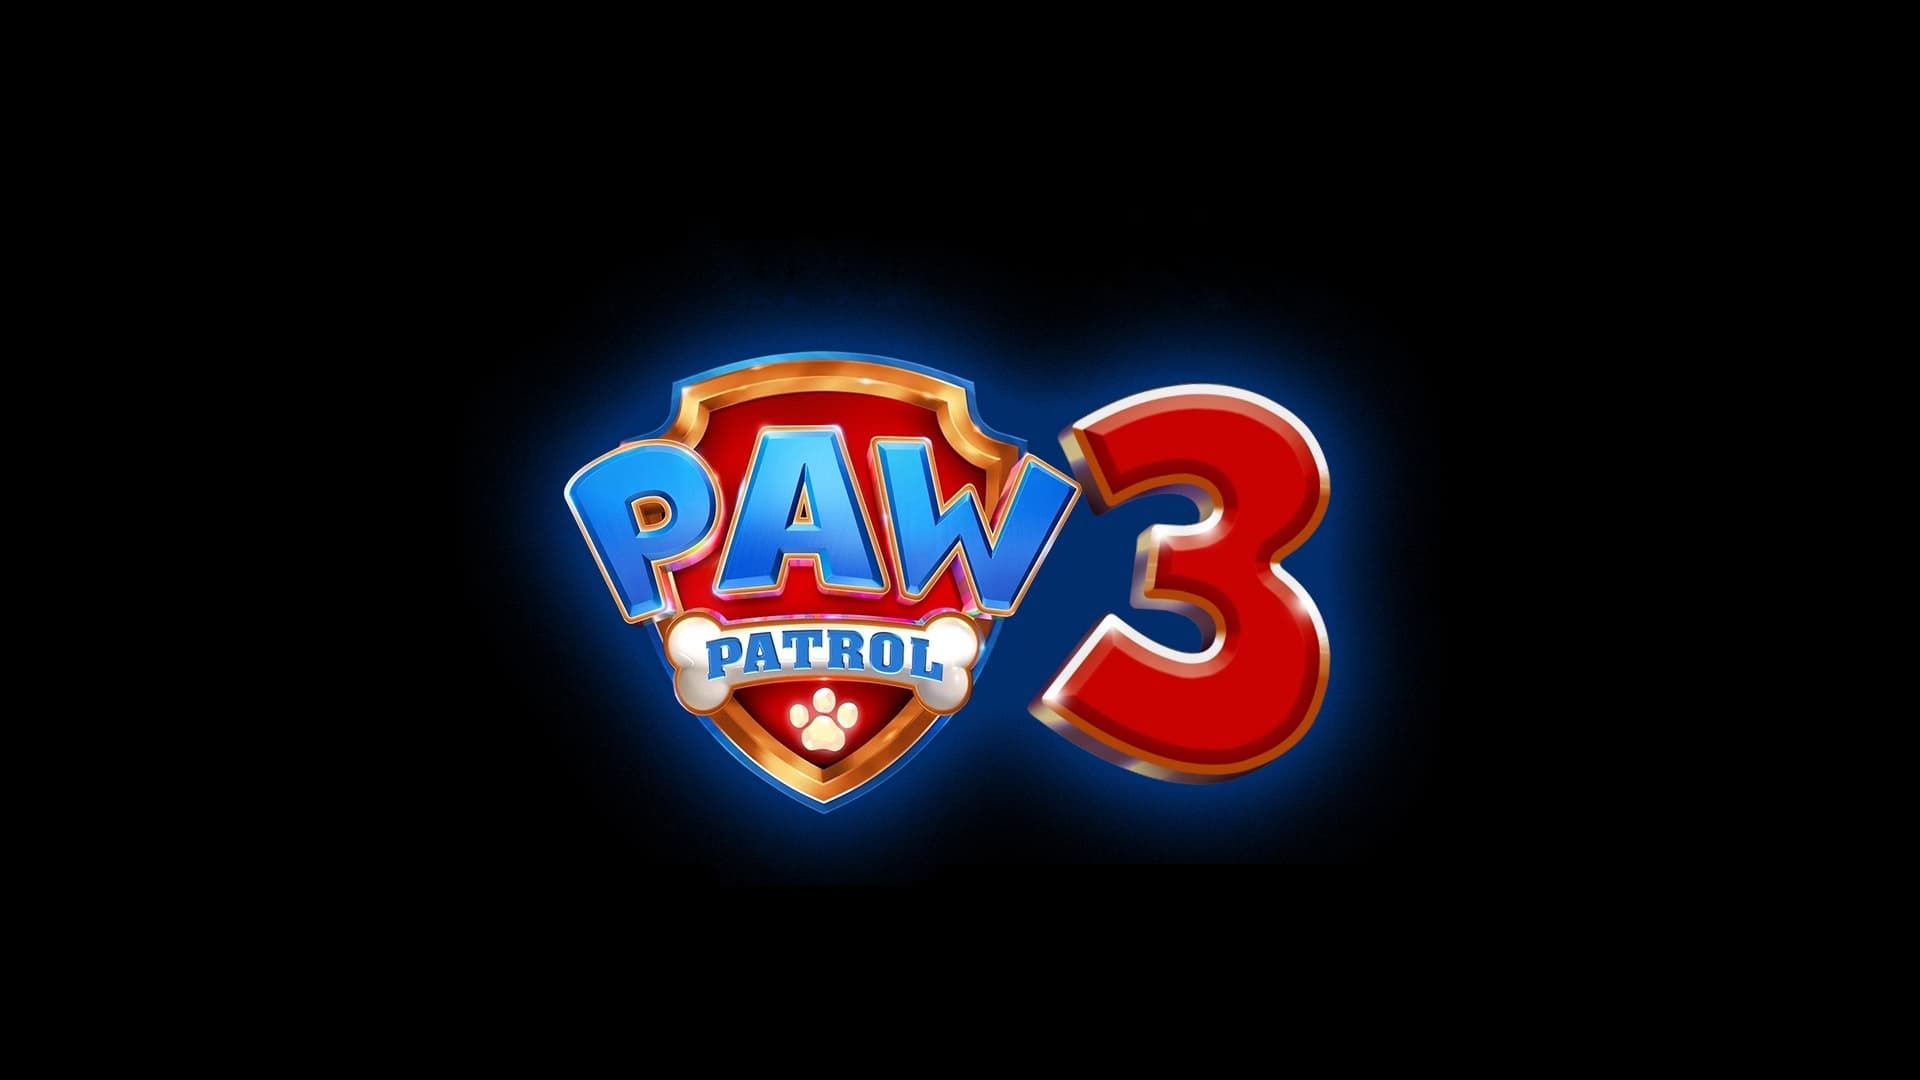 Paw Patrol 3 background